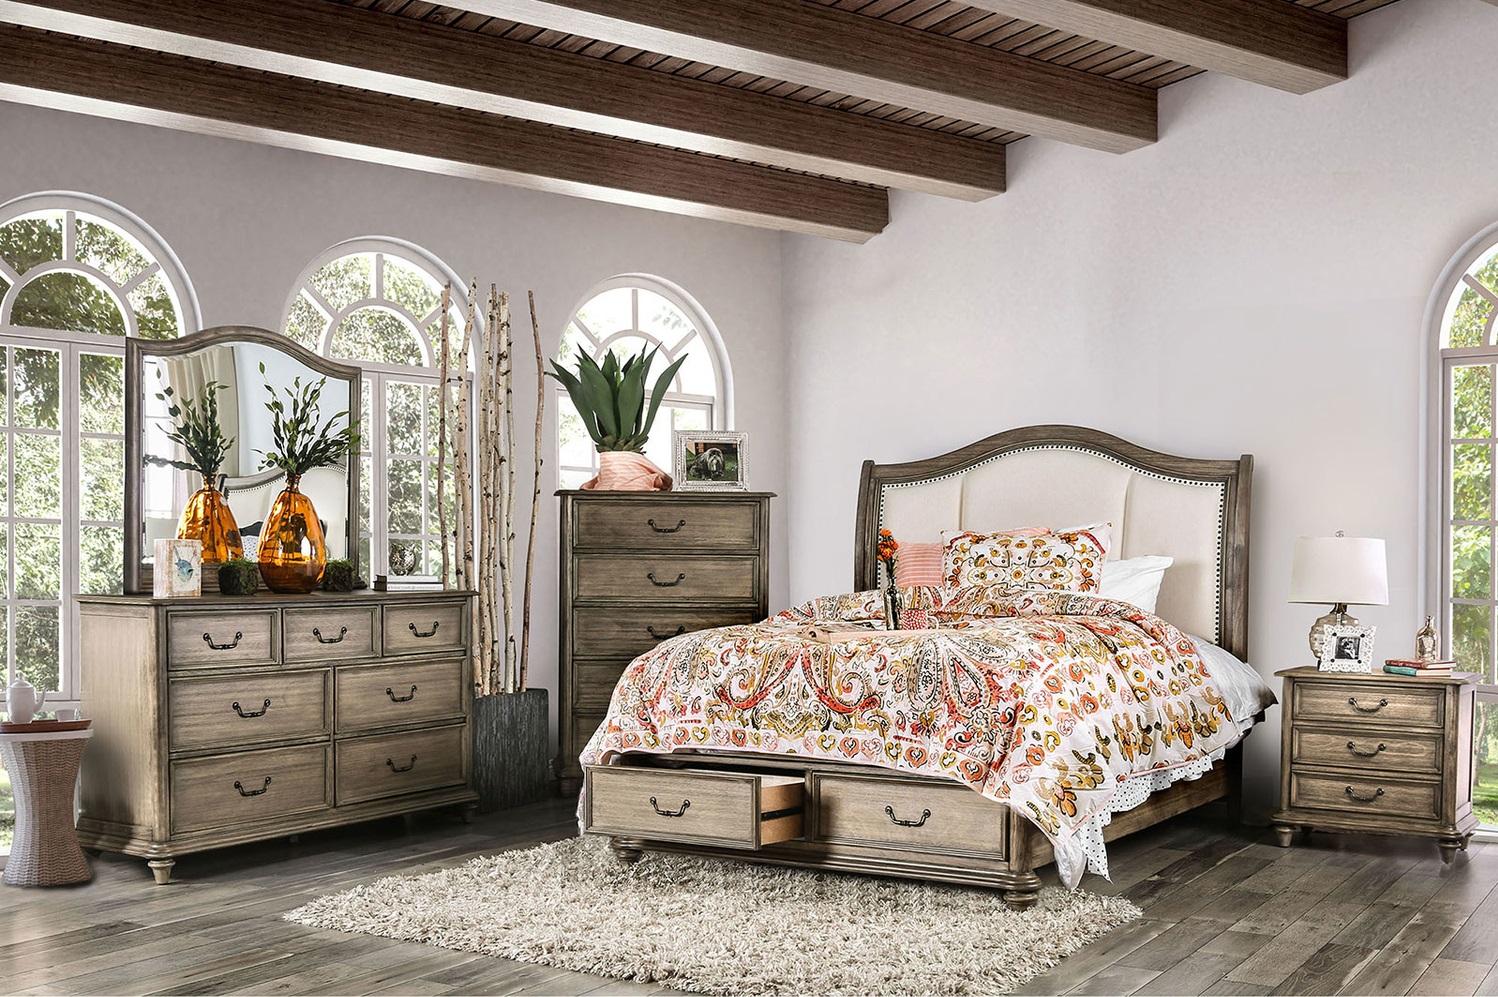 

    
Rustic Natural & Ivory Solid Wood Fabric Queen Bedroom Set 5pcs Furniture of America CM7614-Q Belgrade
